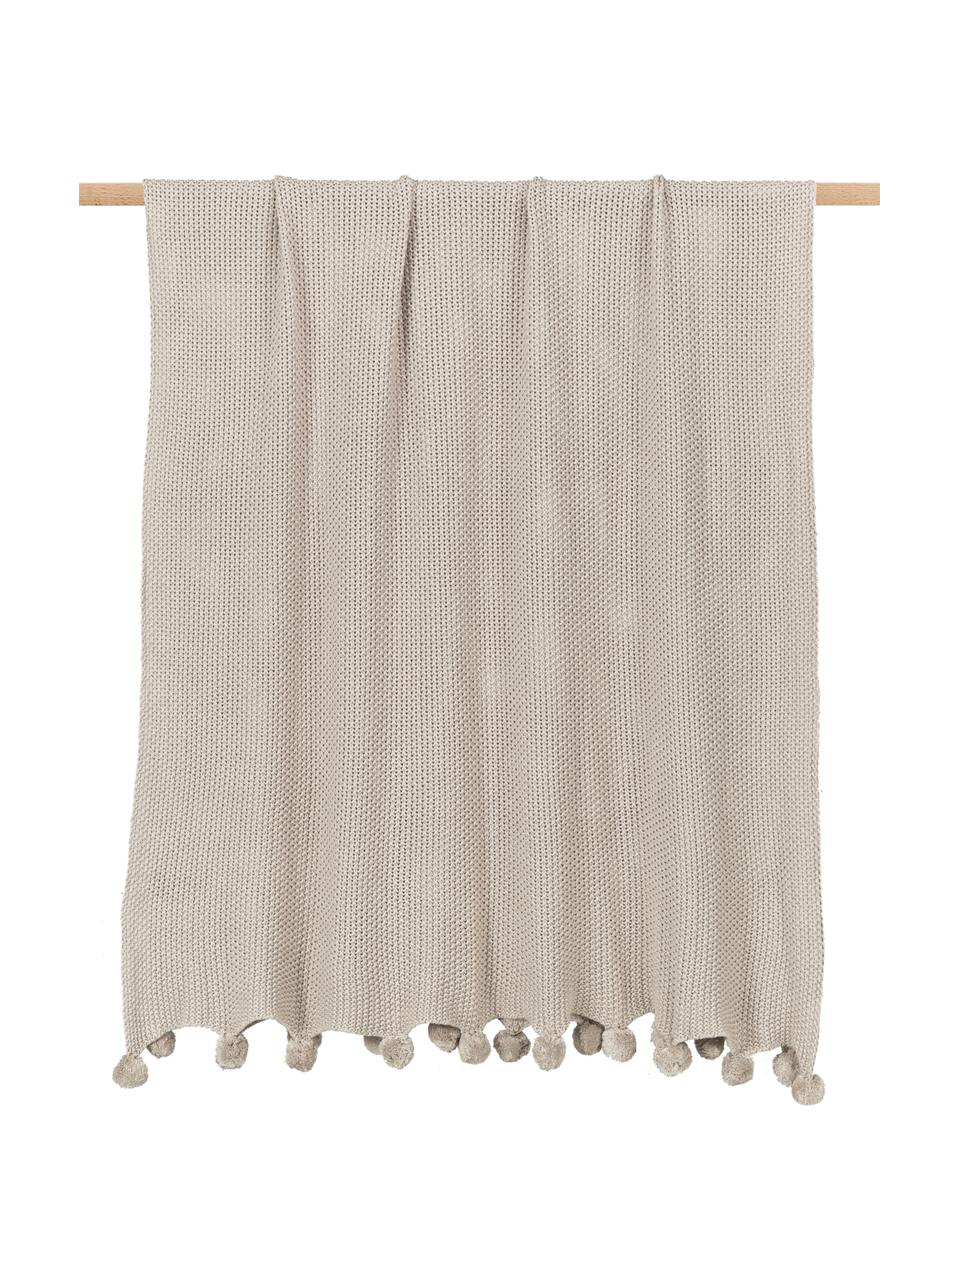 Coperta a maglia beige con pompon Molly, 100% cotone, Beige, Larg. 130 x Lung. 170 cm